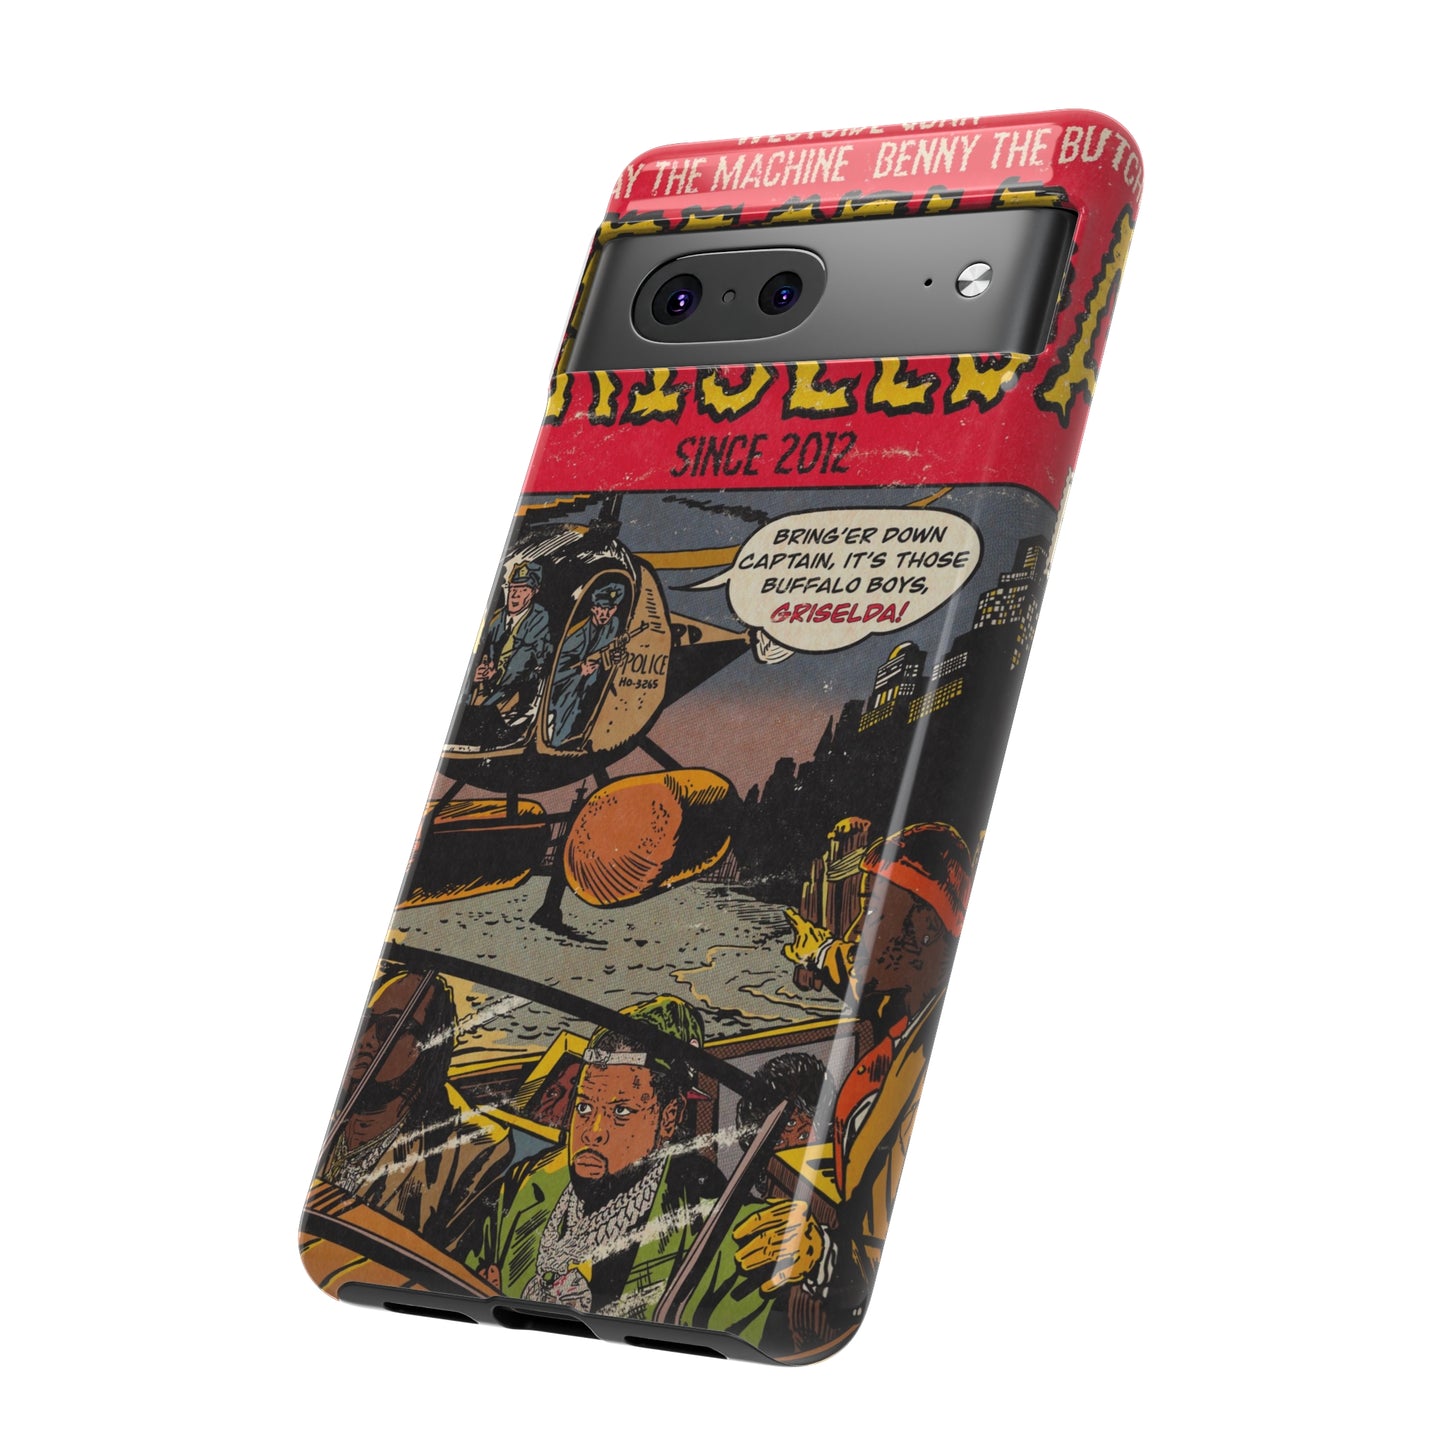 Griselda - Comic Book Art - Tough Phone Cases